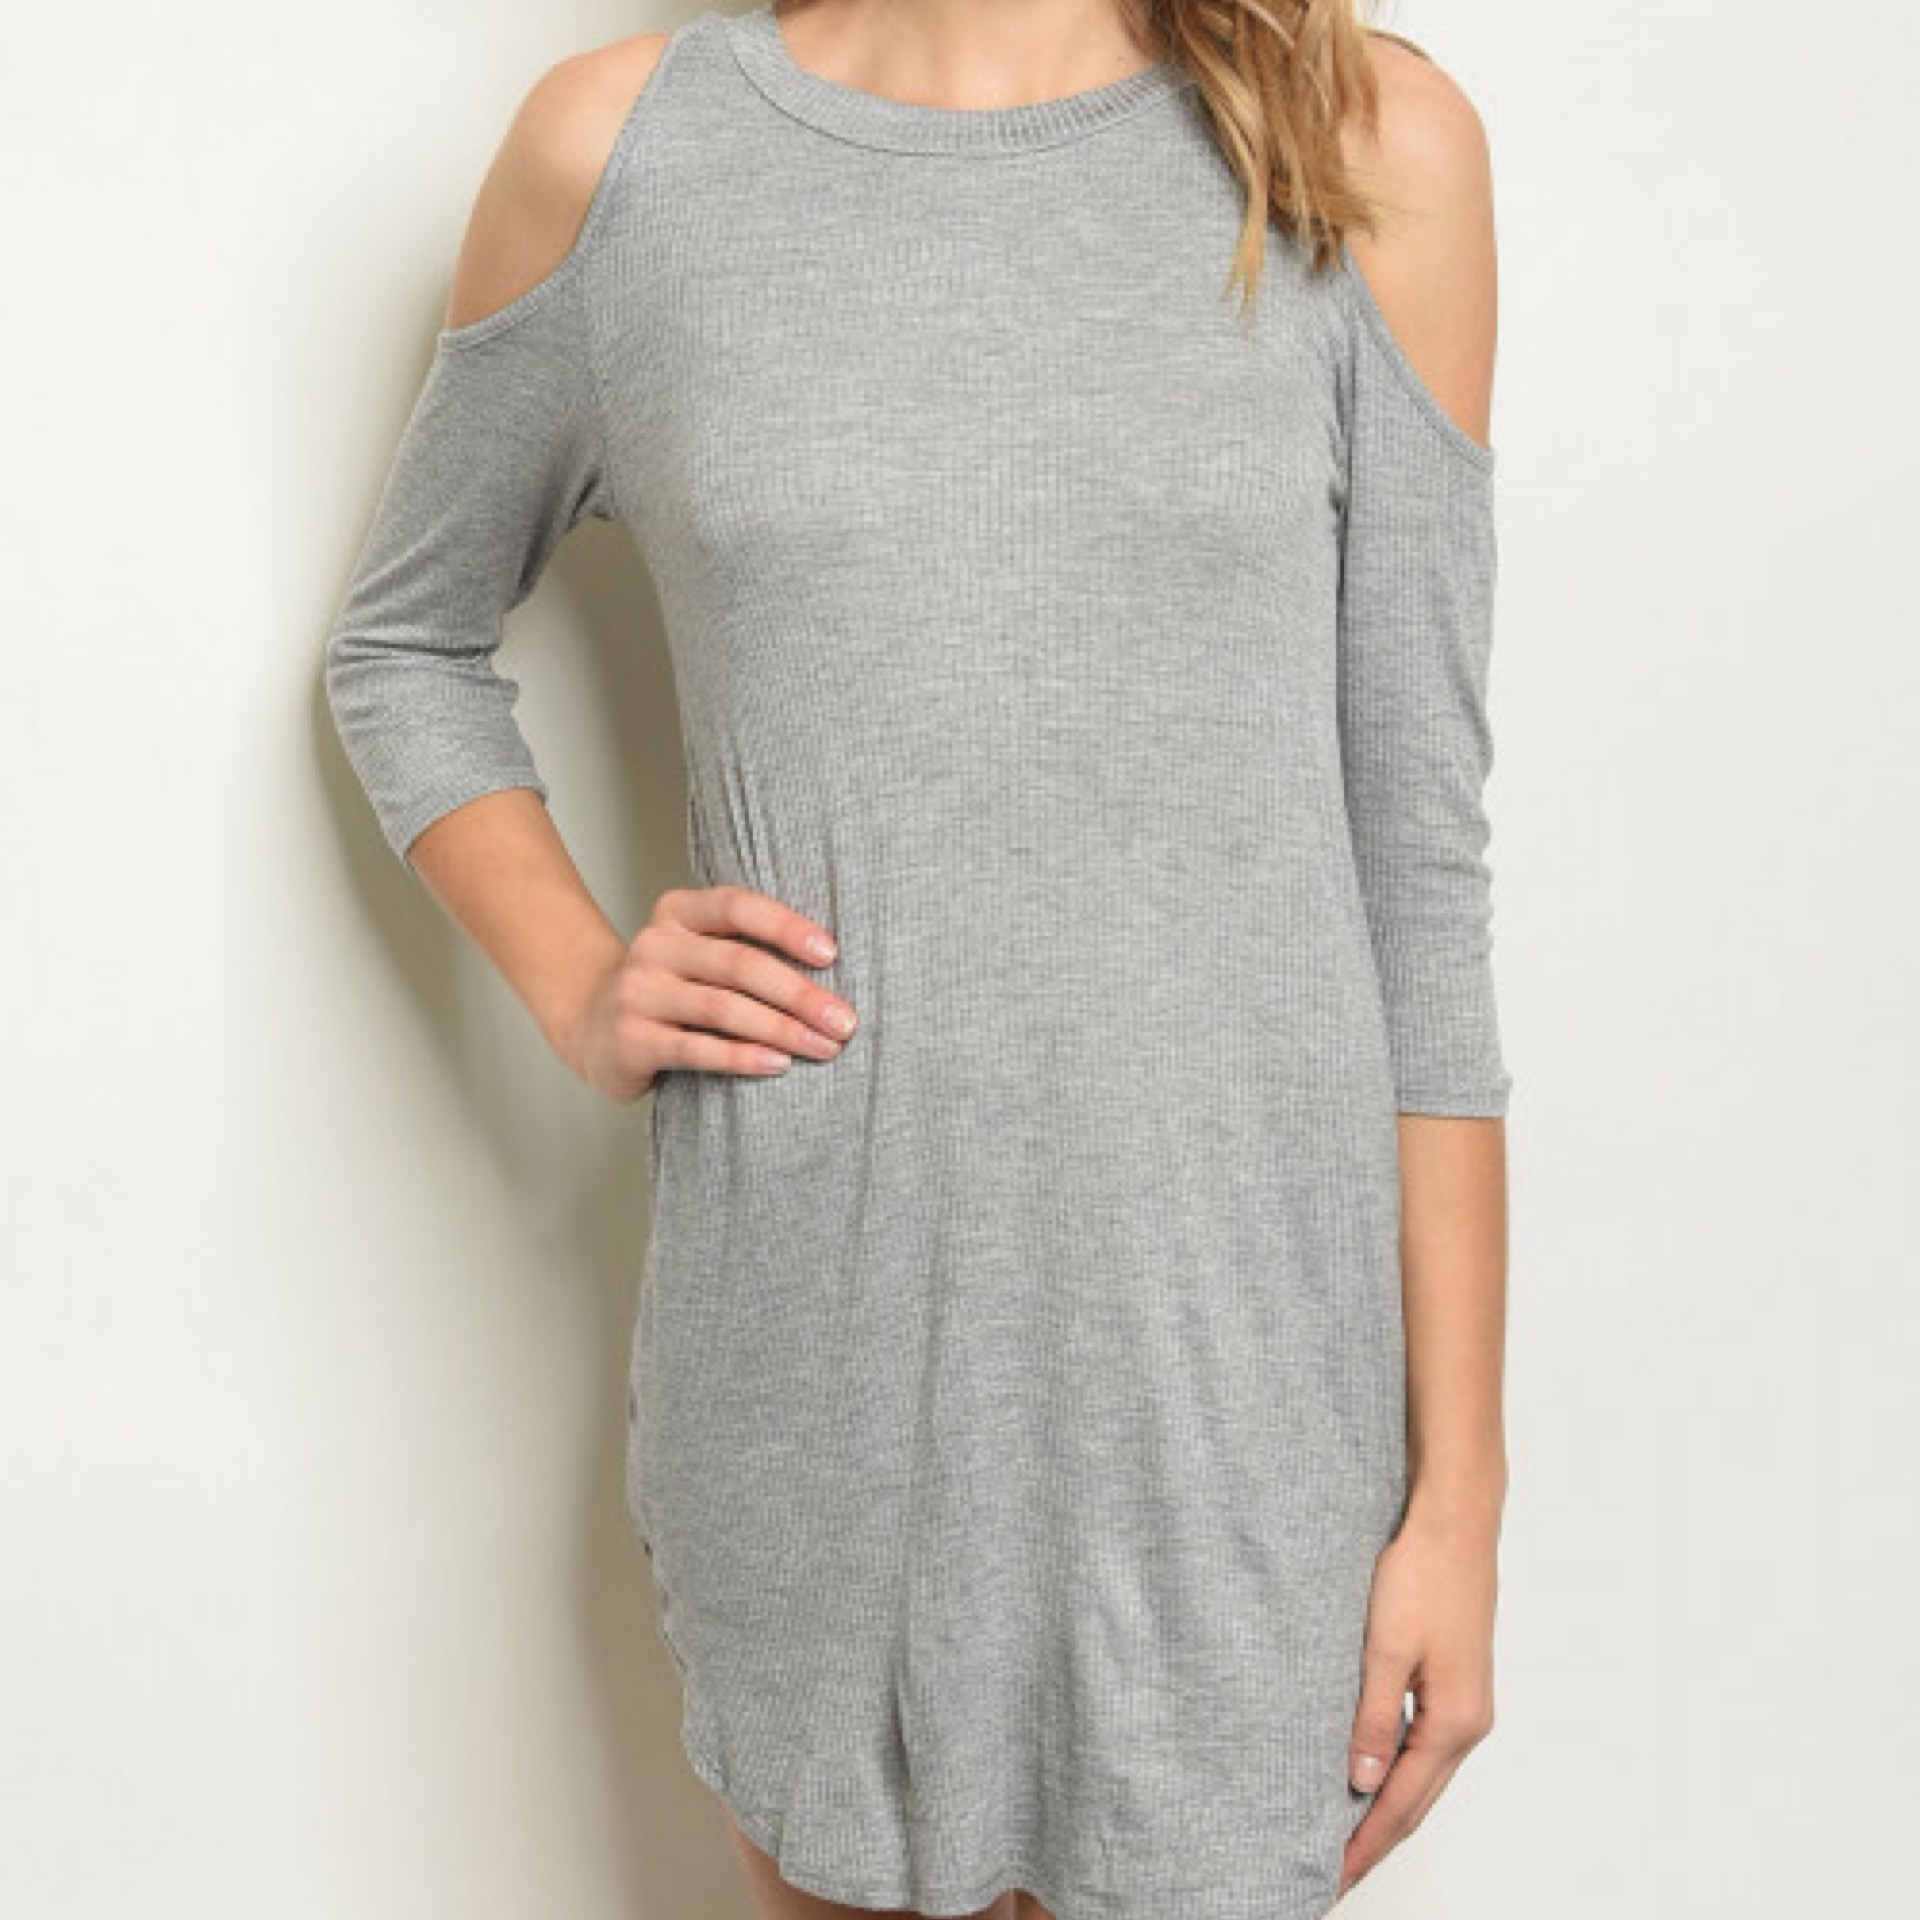 gray cold shoulder dress